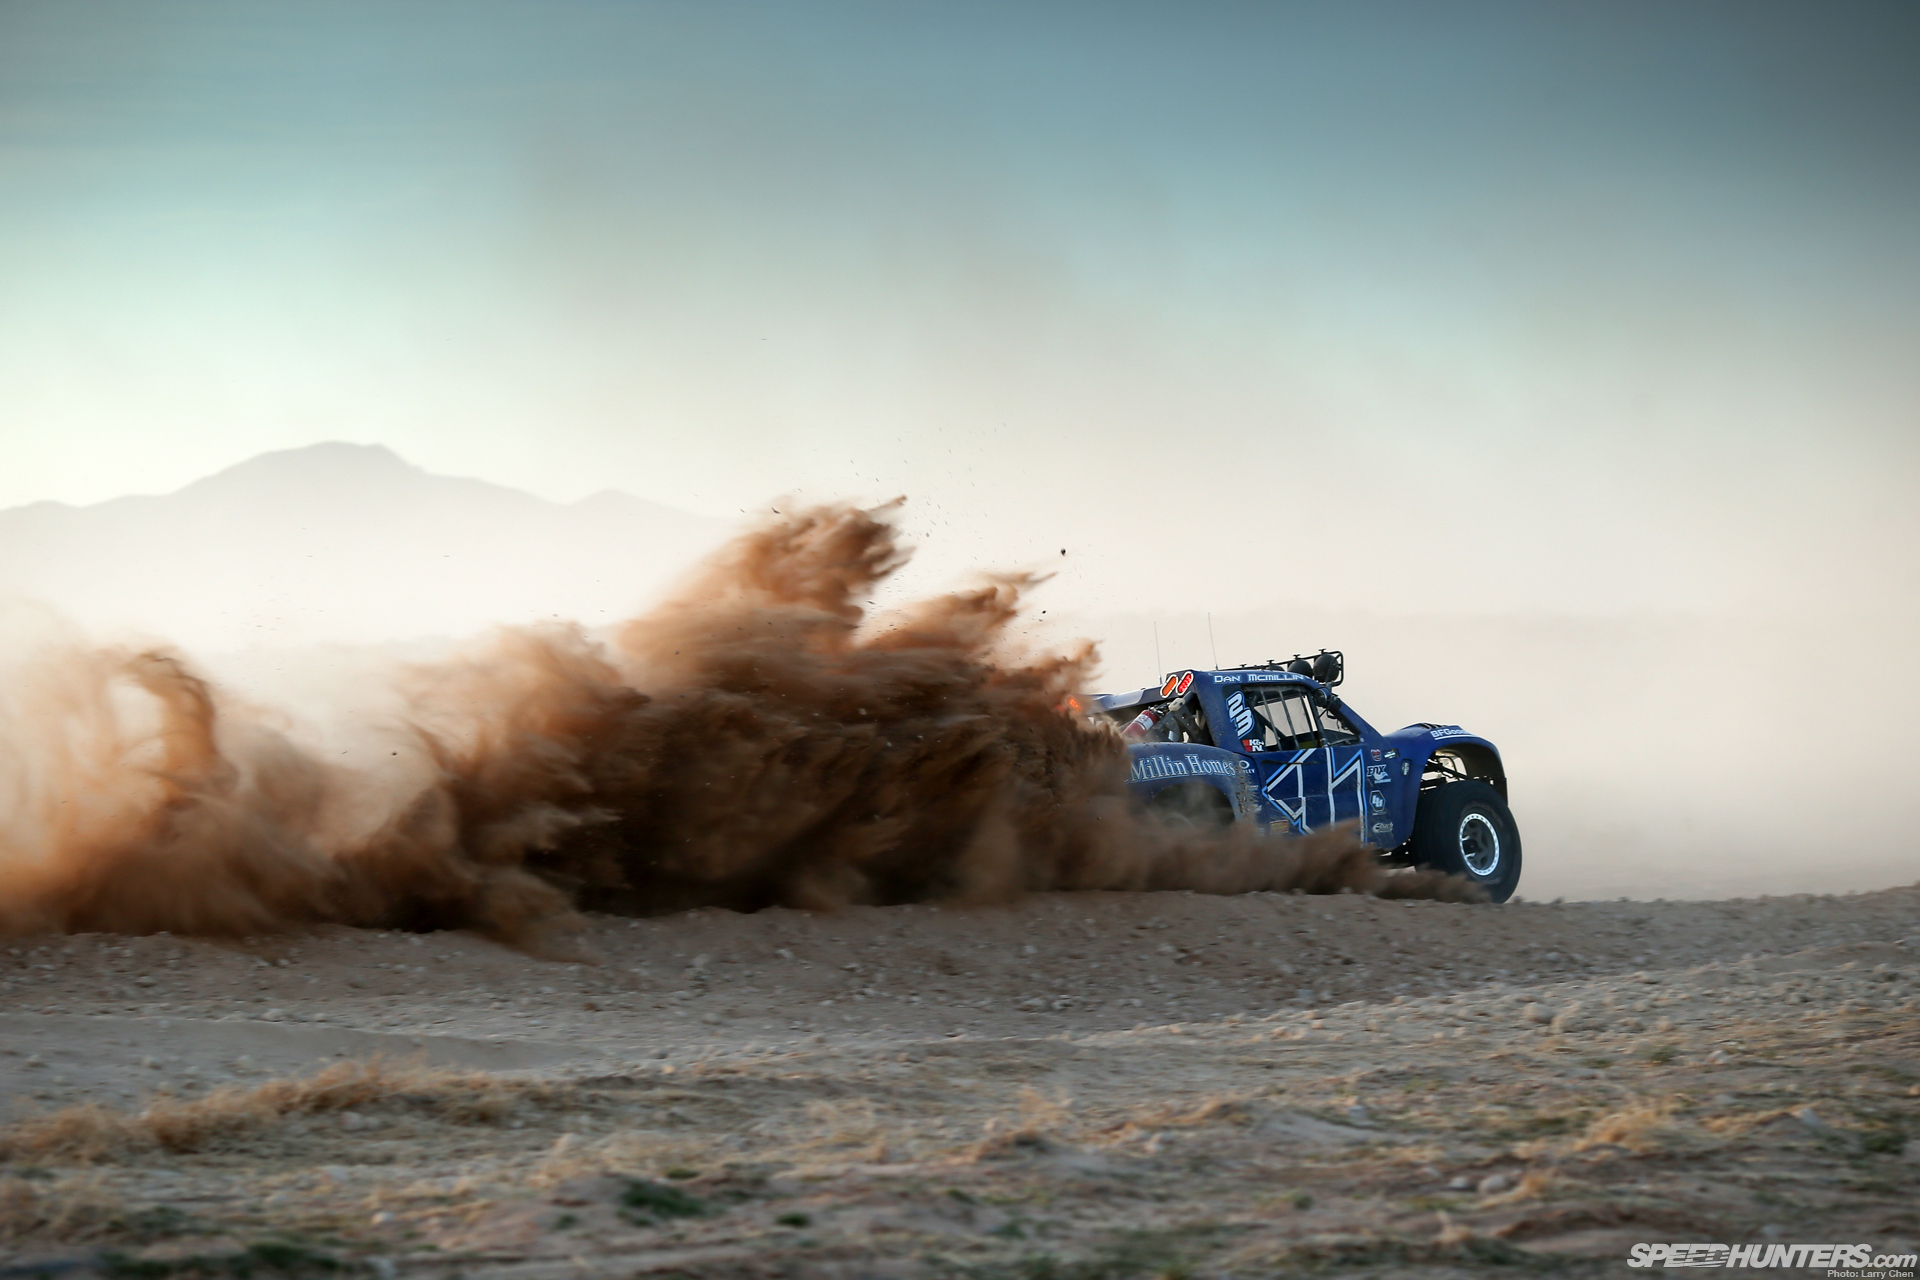 trophy, Truck, Desert, 4x Off, Road, Racing, Race Wallpaper HD / Desktop and Mobile Background